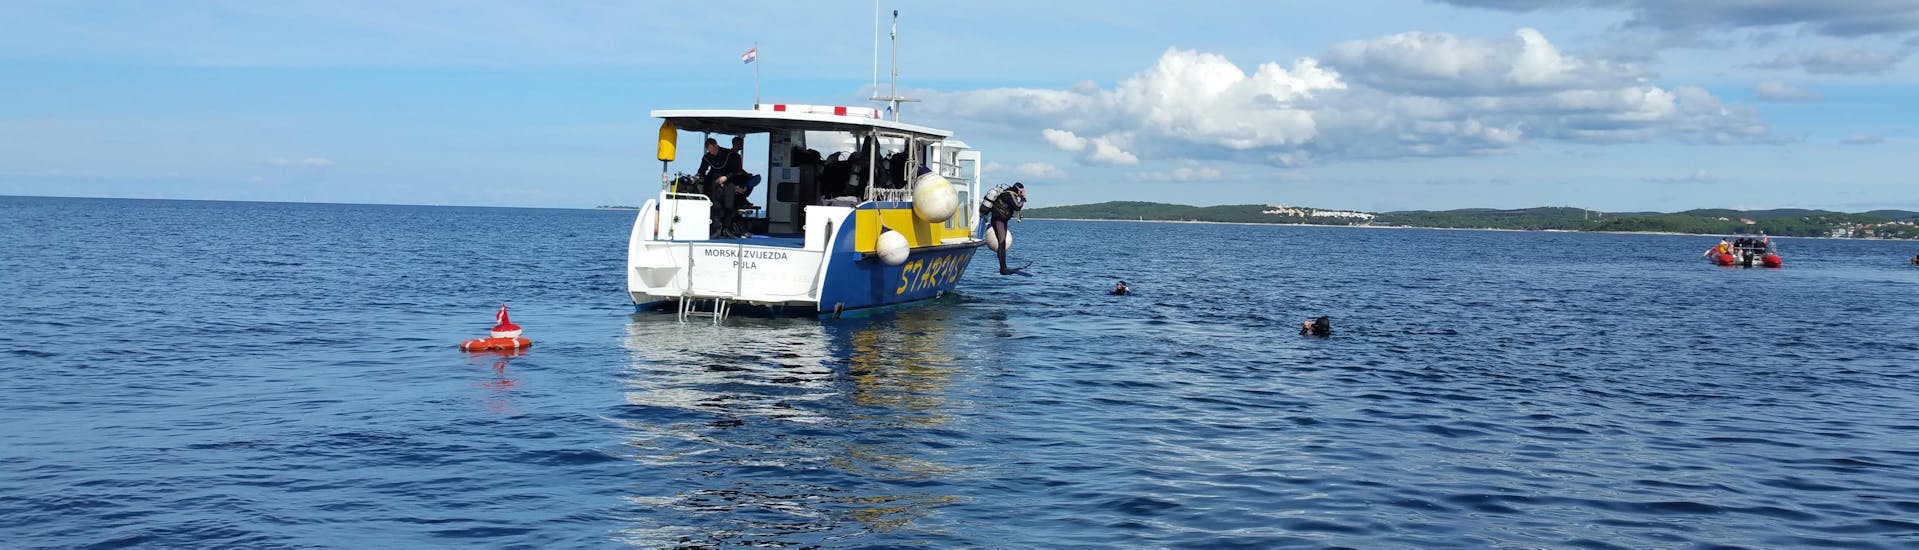 Formation de plongée (PADI) à Vrsar pour Plongeurs certifiés.